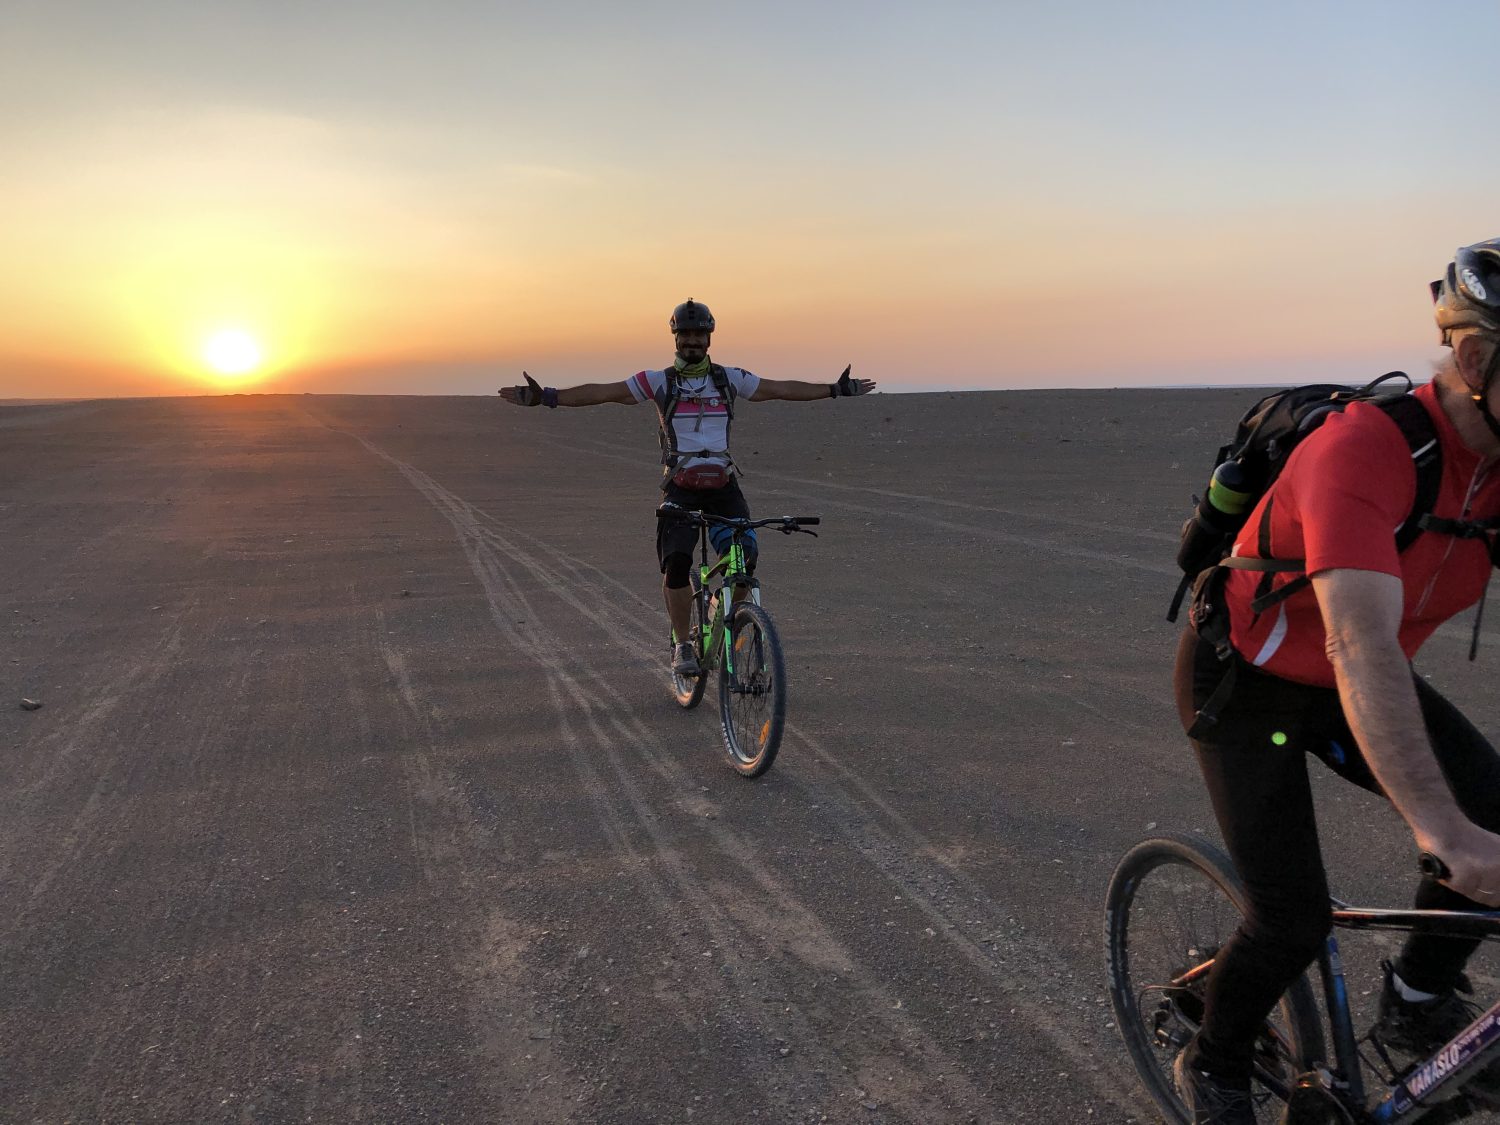 Blick auf Radfahrer in der Wüste Irans beim Sonnenuntergang